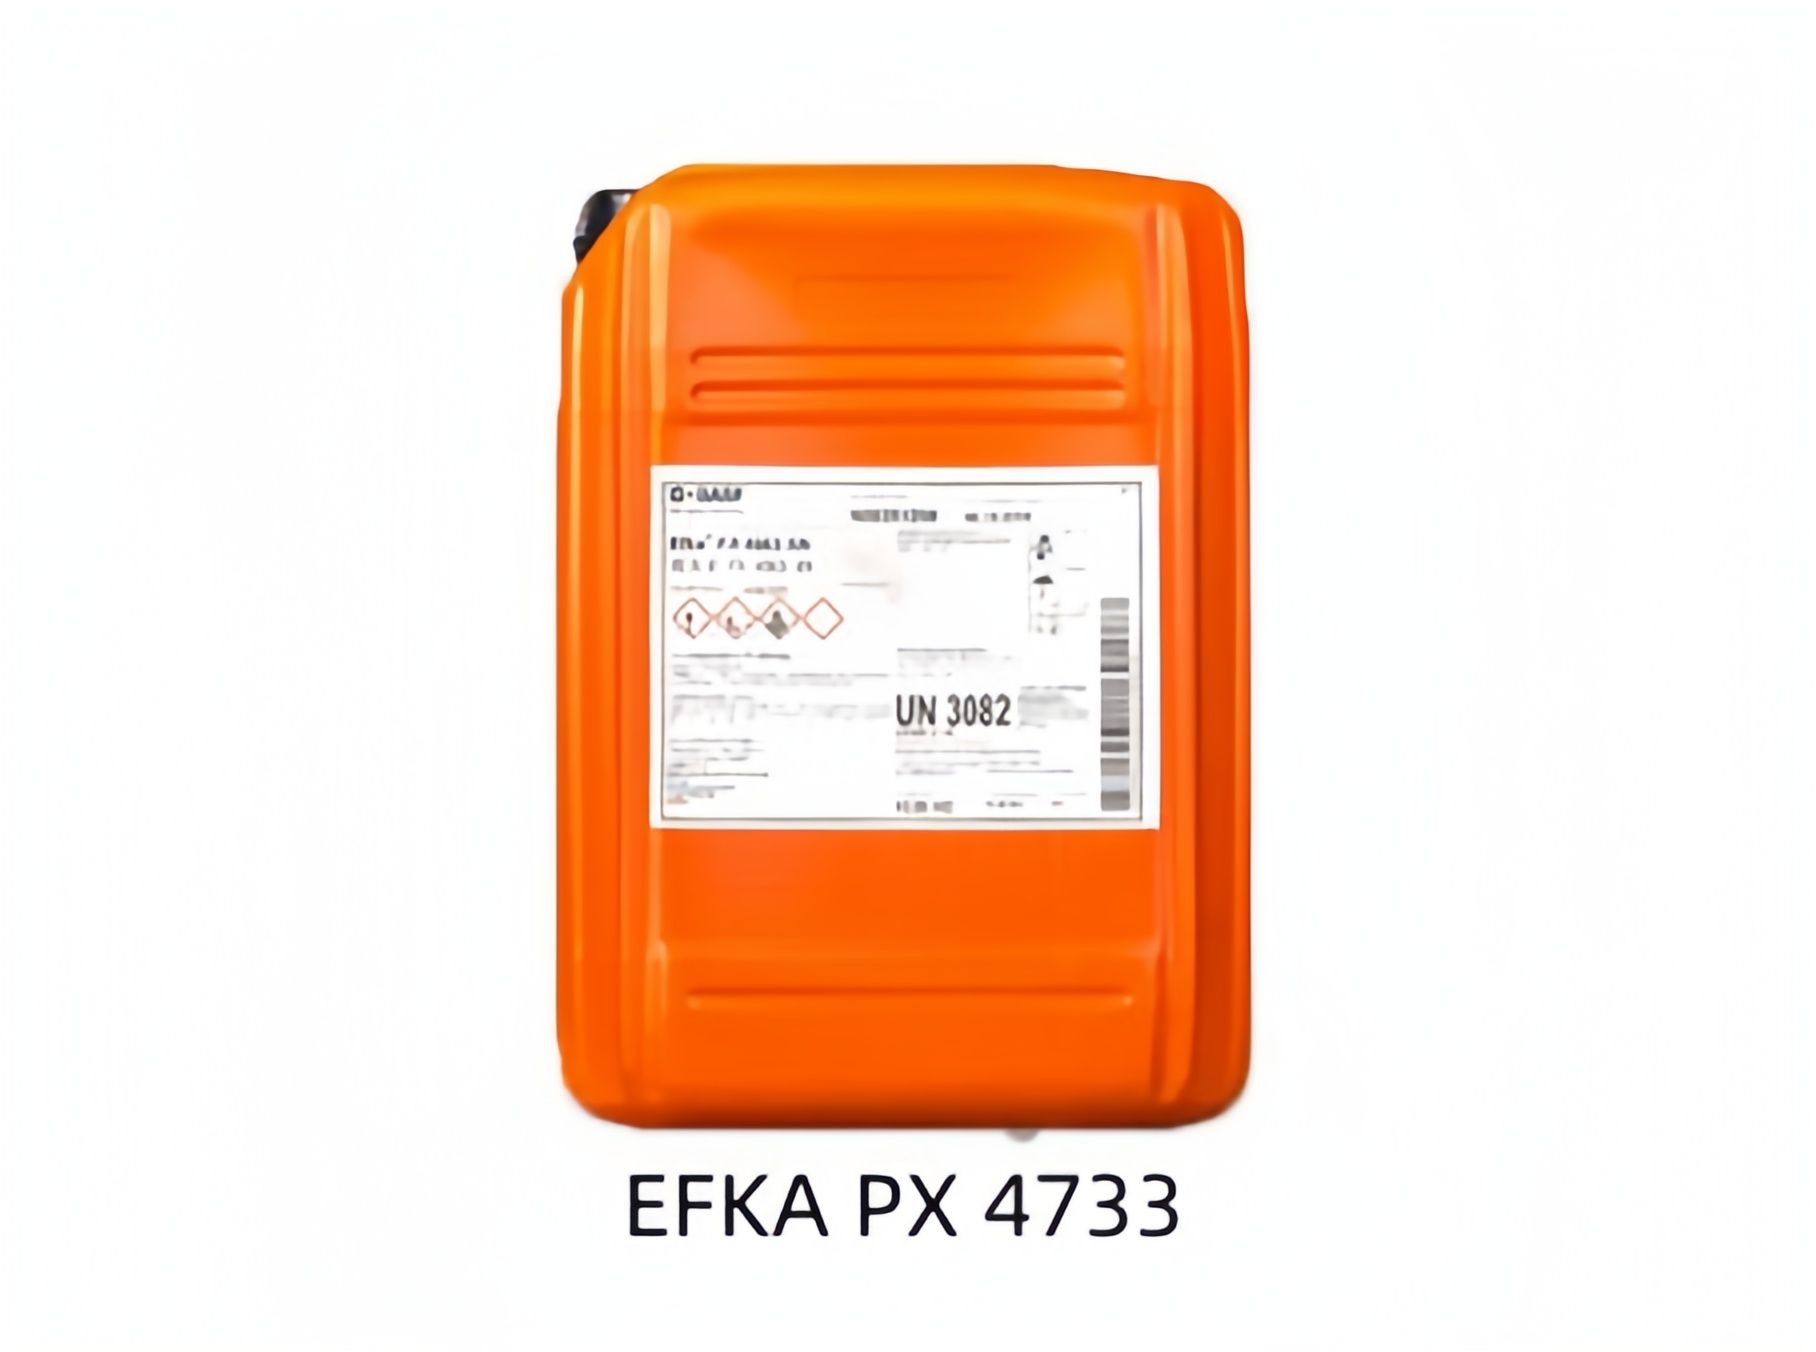 巴斯夫分散剂EFKA PX 4733